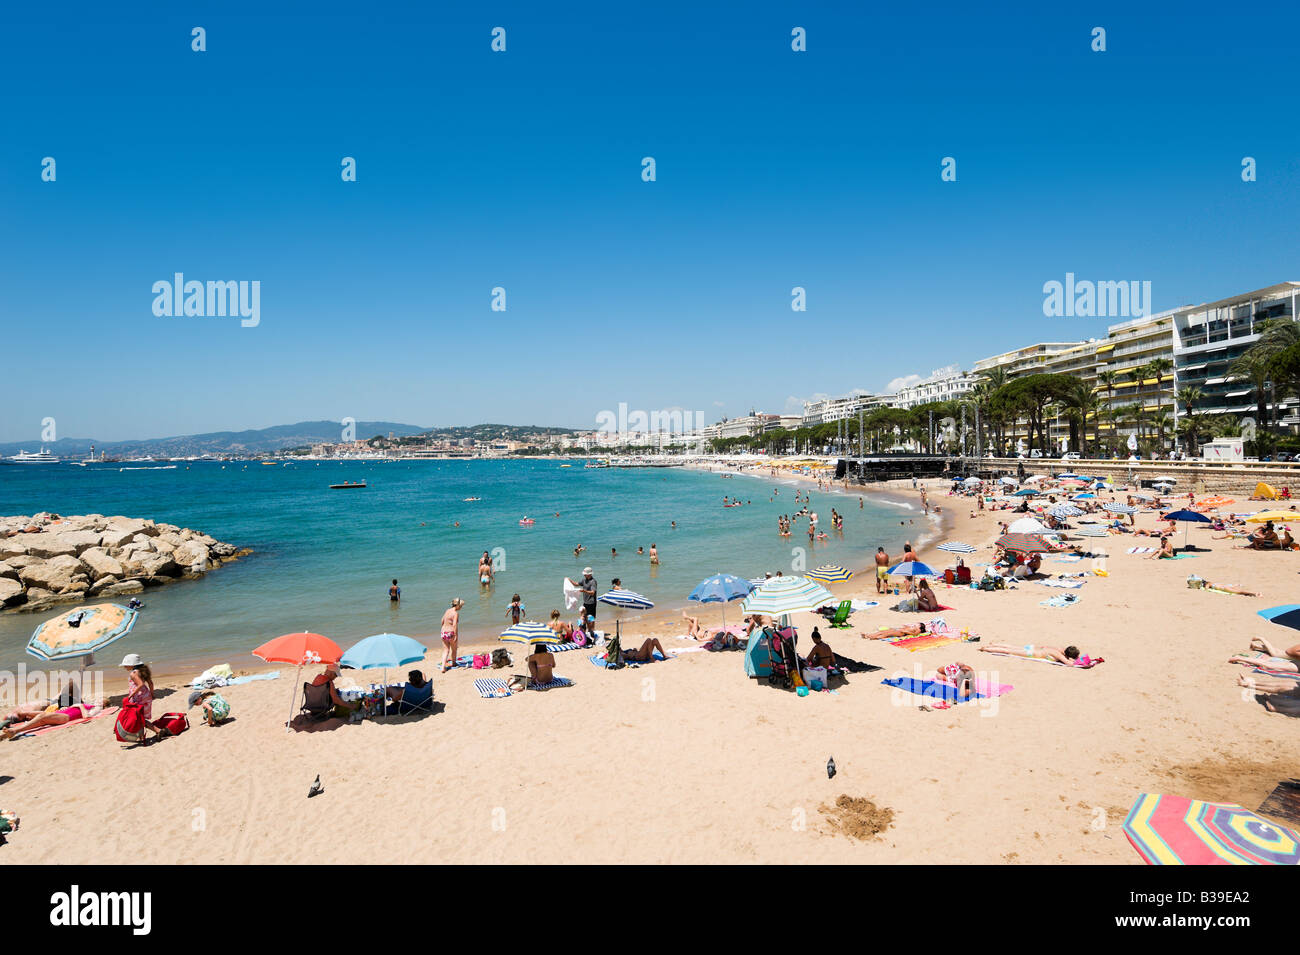 Plage de la Croisette (La Croisette), Cannes, Cote d'Azur, Provence, France Banque D'Images